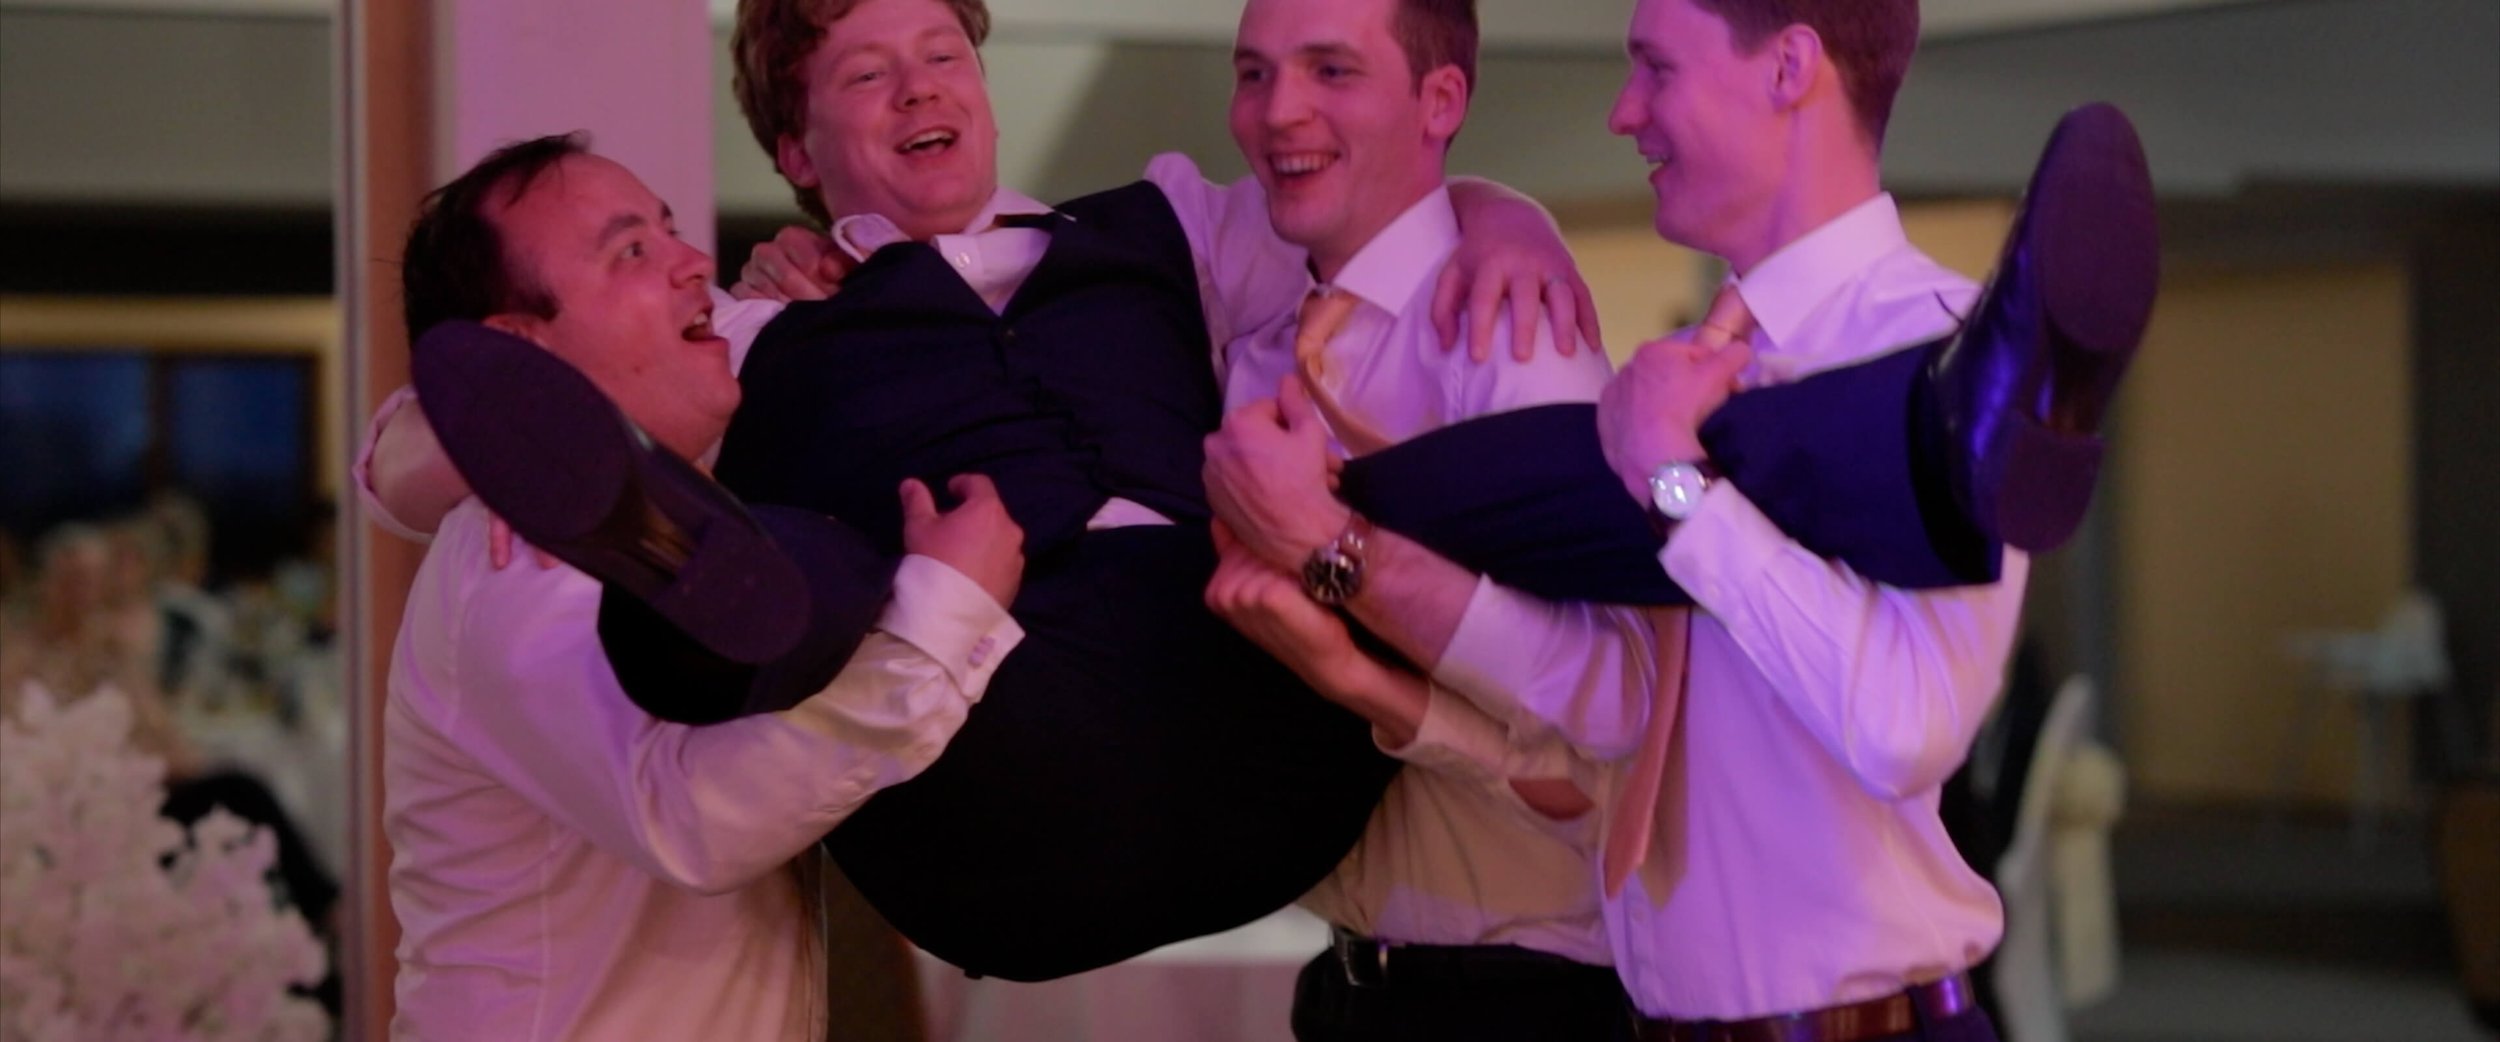 The drunk groomsmen carrying Dael around the dance floor